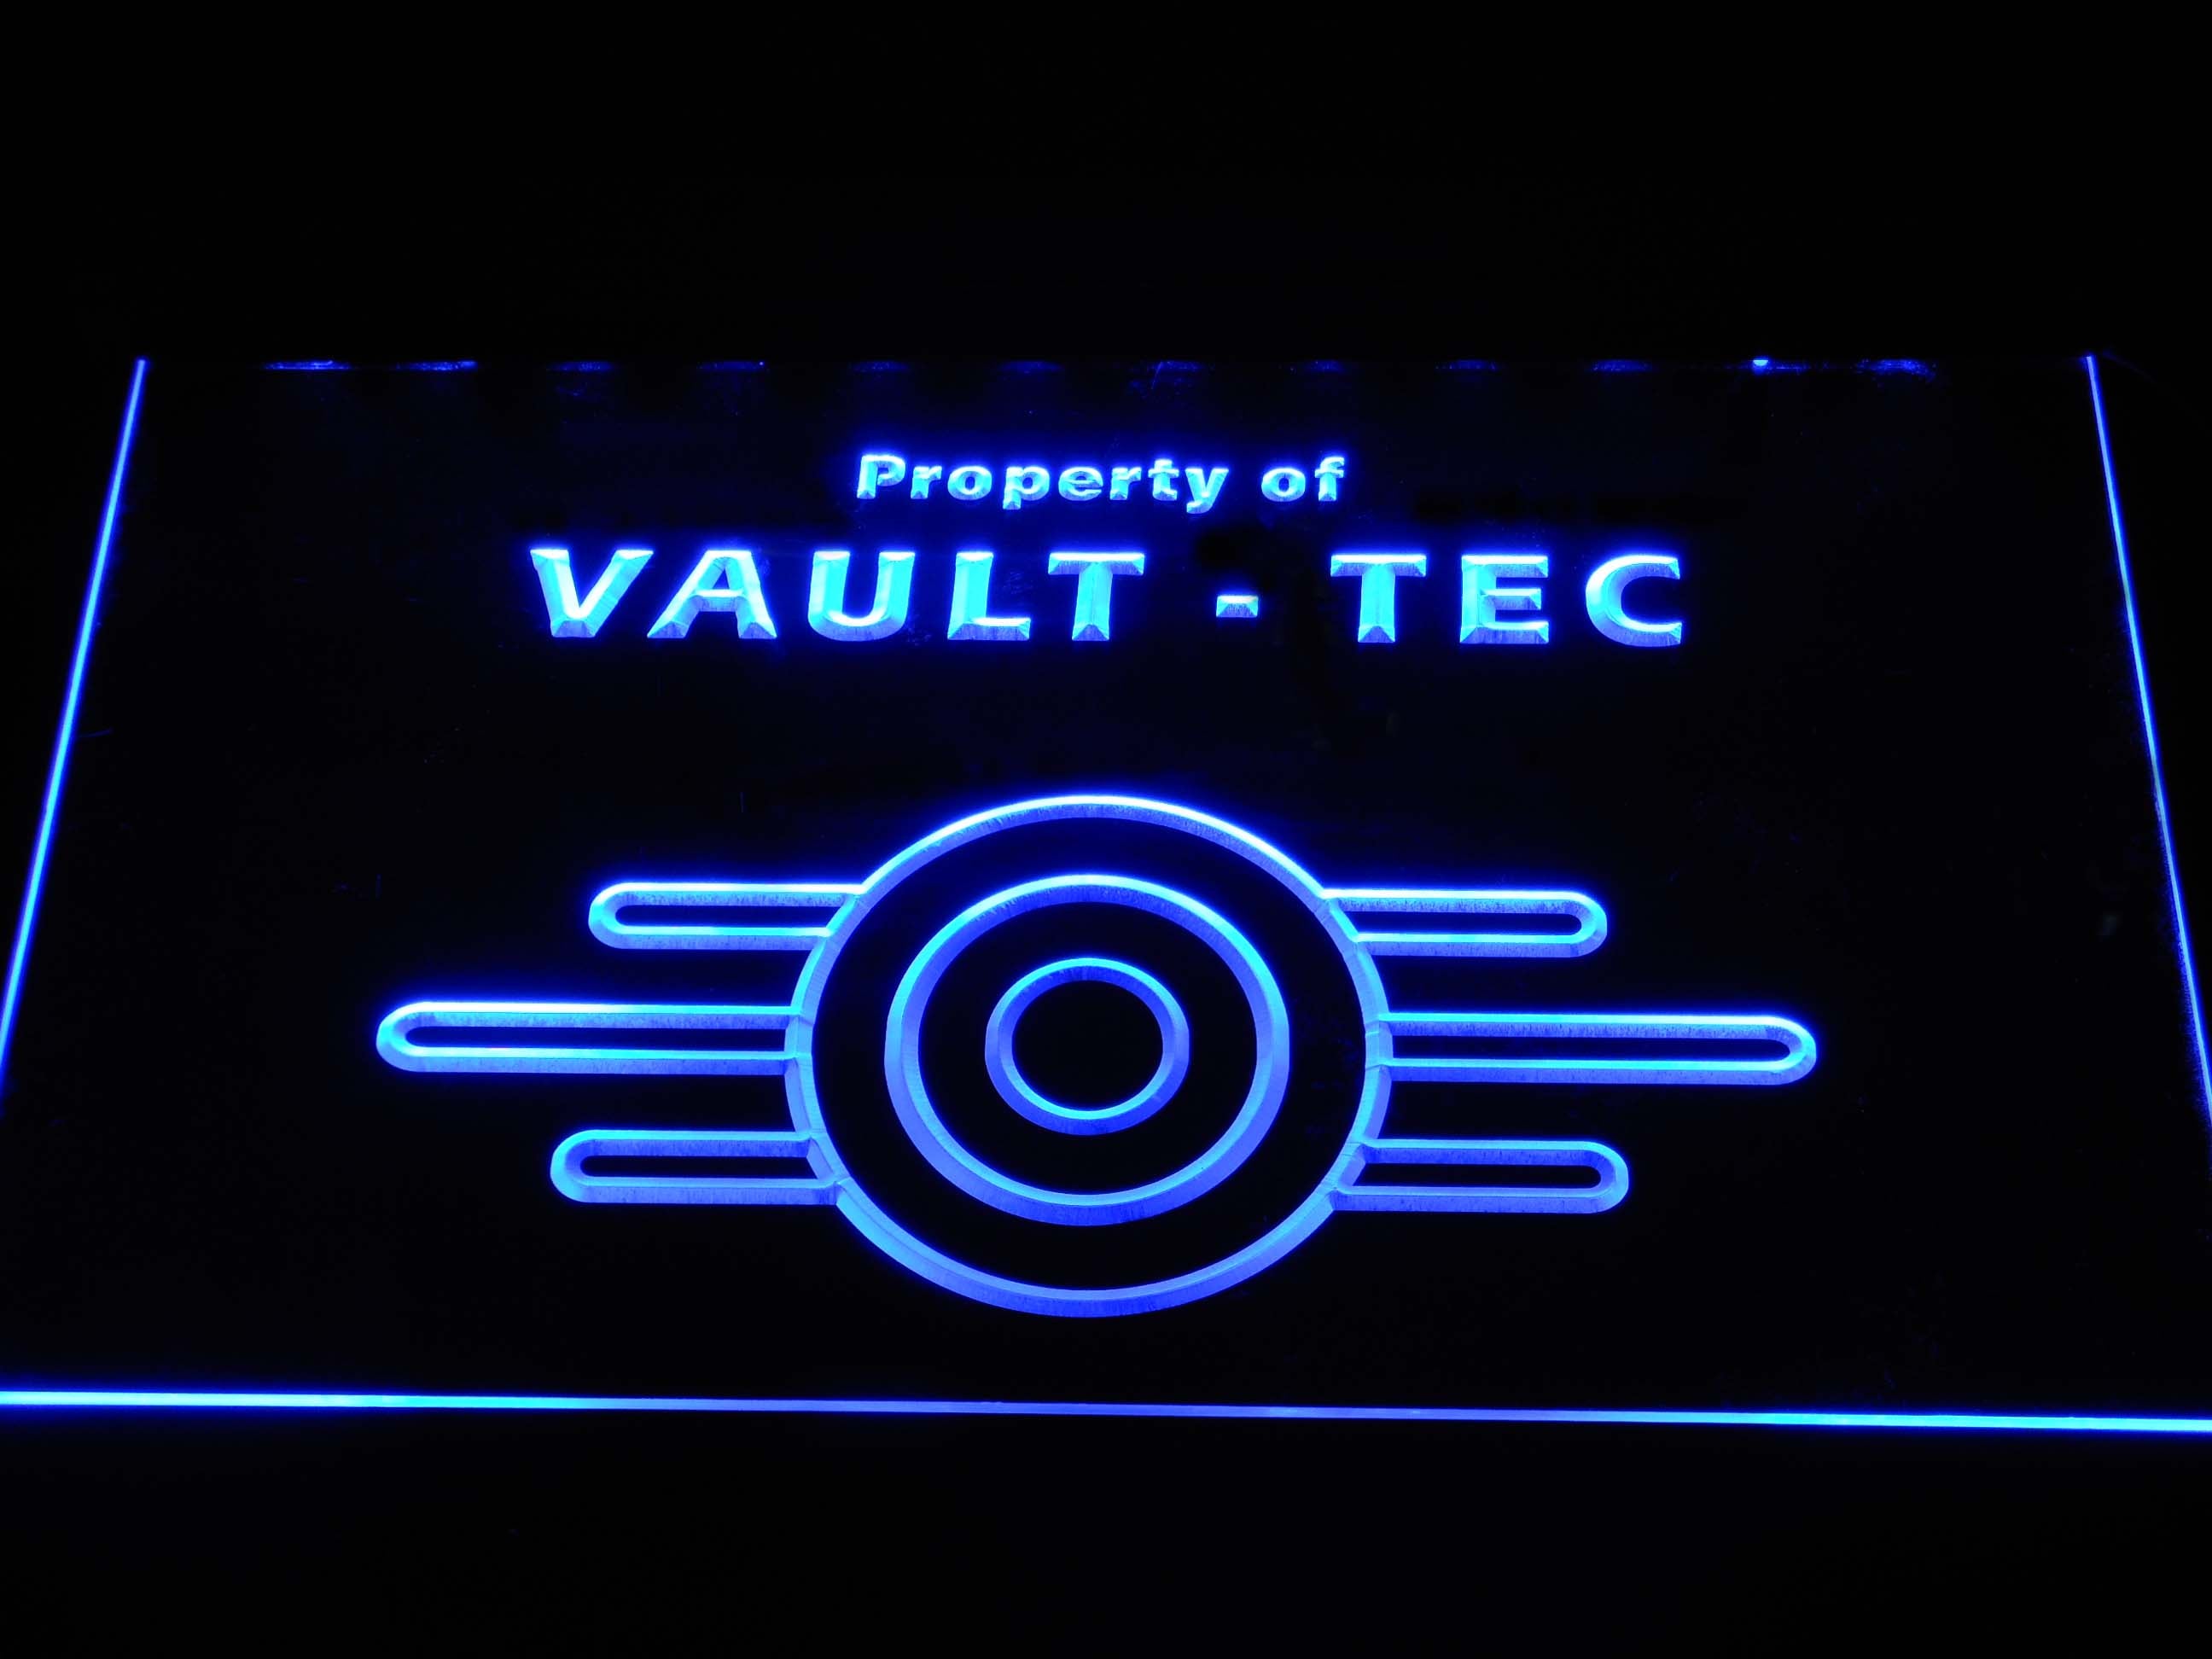 Vaultのフォールアウトプロパティ-TecネオンライトLEDサイン